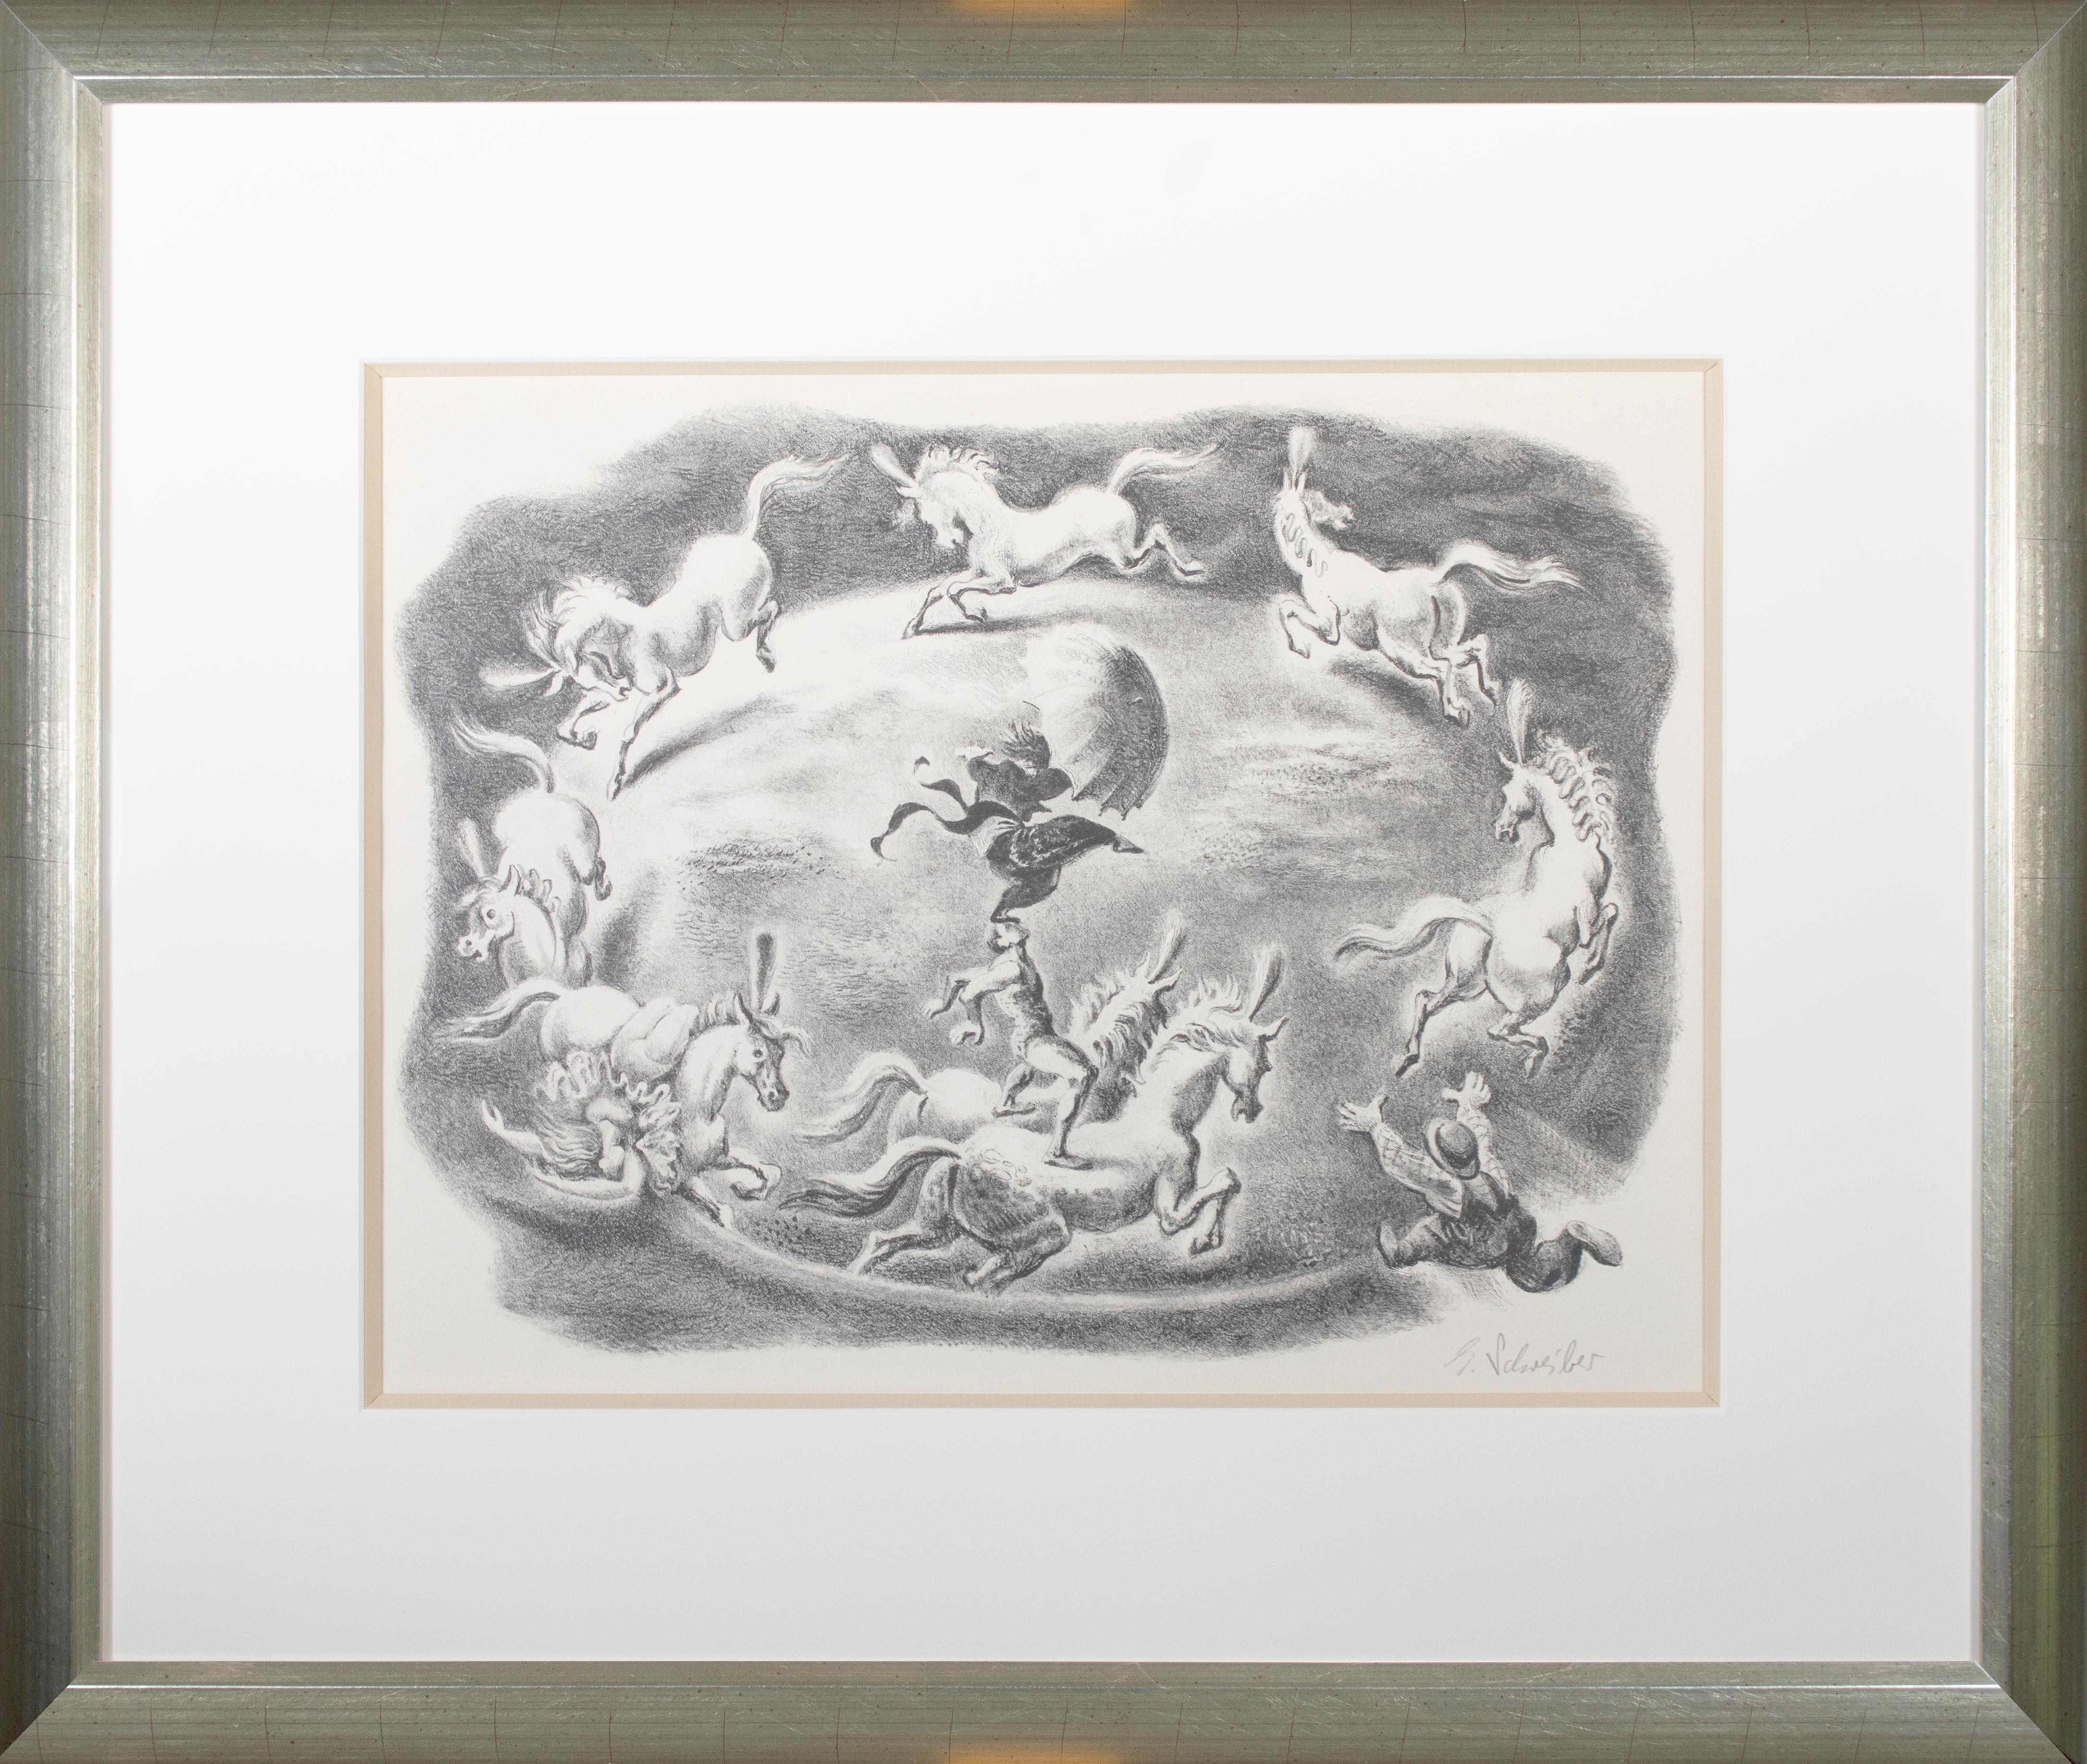 Dans cette lithographie, Georges Schreiber s'est concentré sur les sensations fortes du cirque, reprenant la composition circulaire de la piste centrale. Ici, des acrobates réalisent des prouesses d'agilité sur le dos d'un groupe de chevaux au